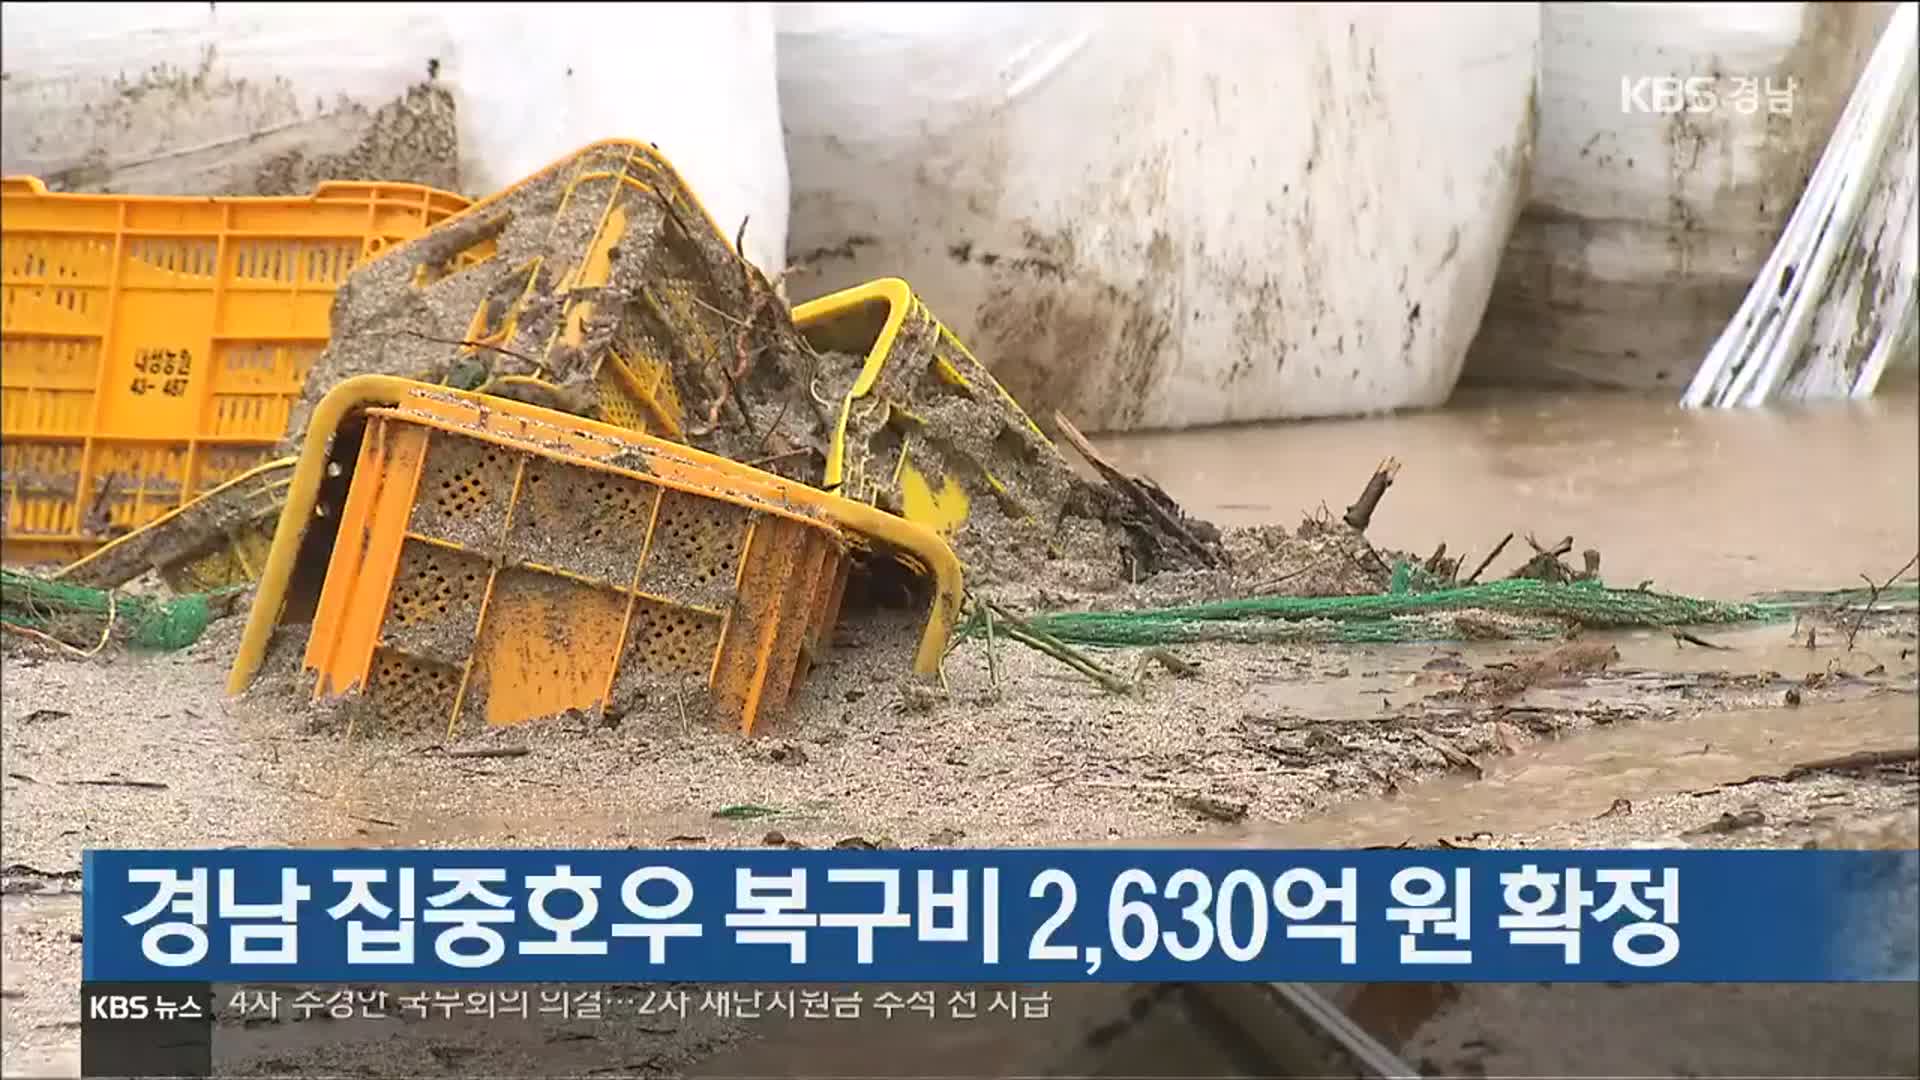 [간추린 경남] 경남 집중호우 복구비 2,630억 원 확정